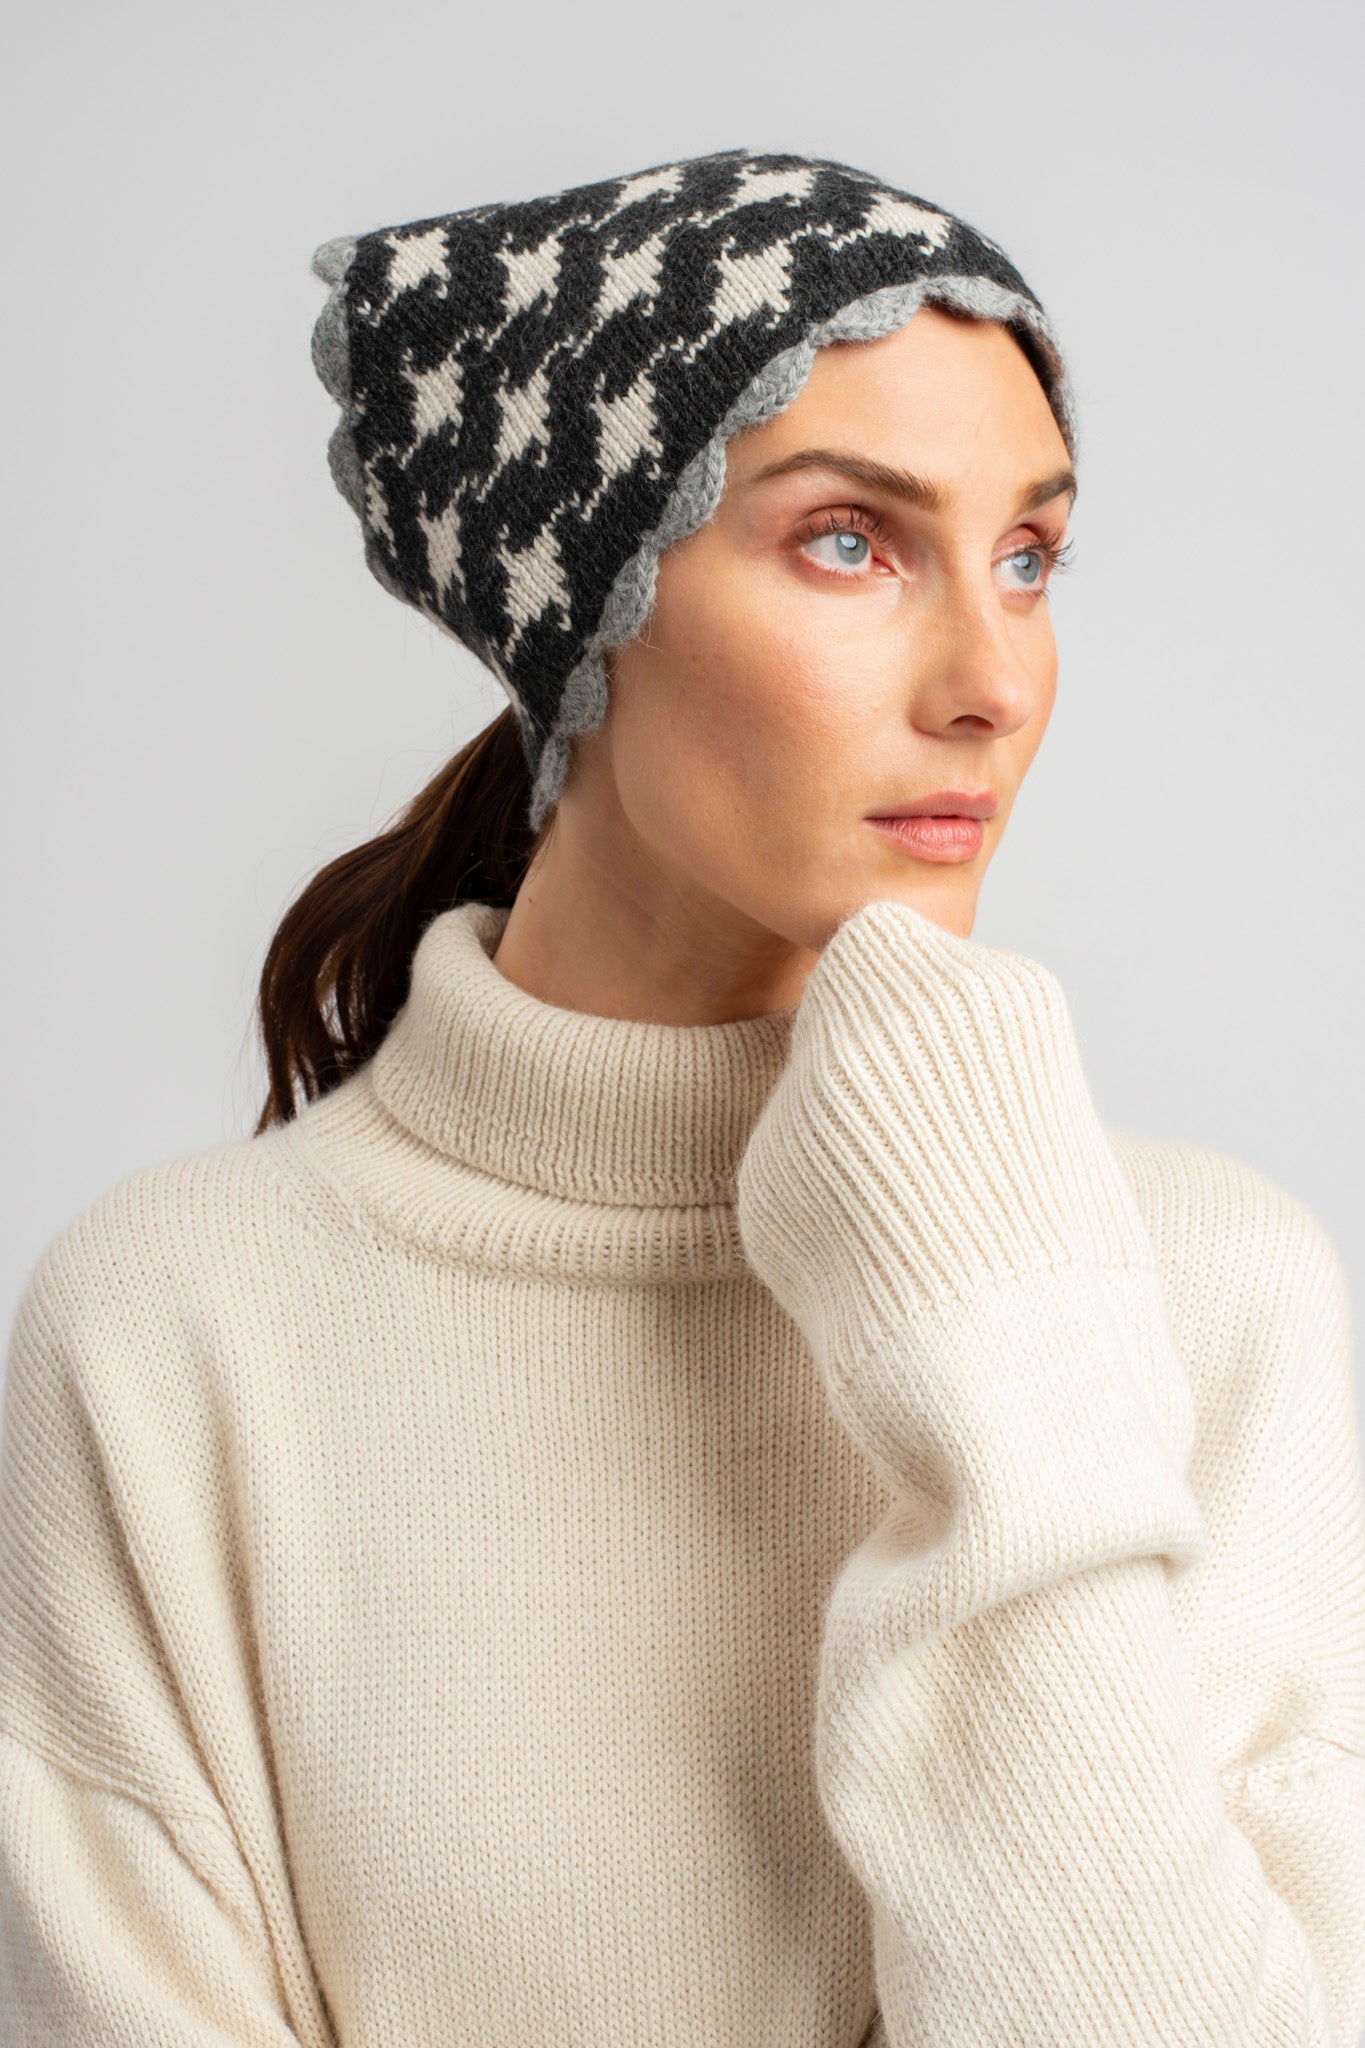 Model wearing knitwear alpaca wool headscarf in white & grey reversible houndstooth